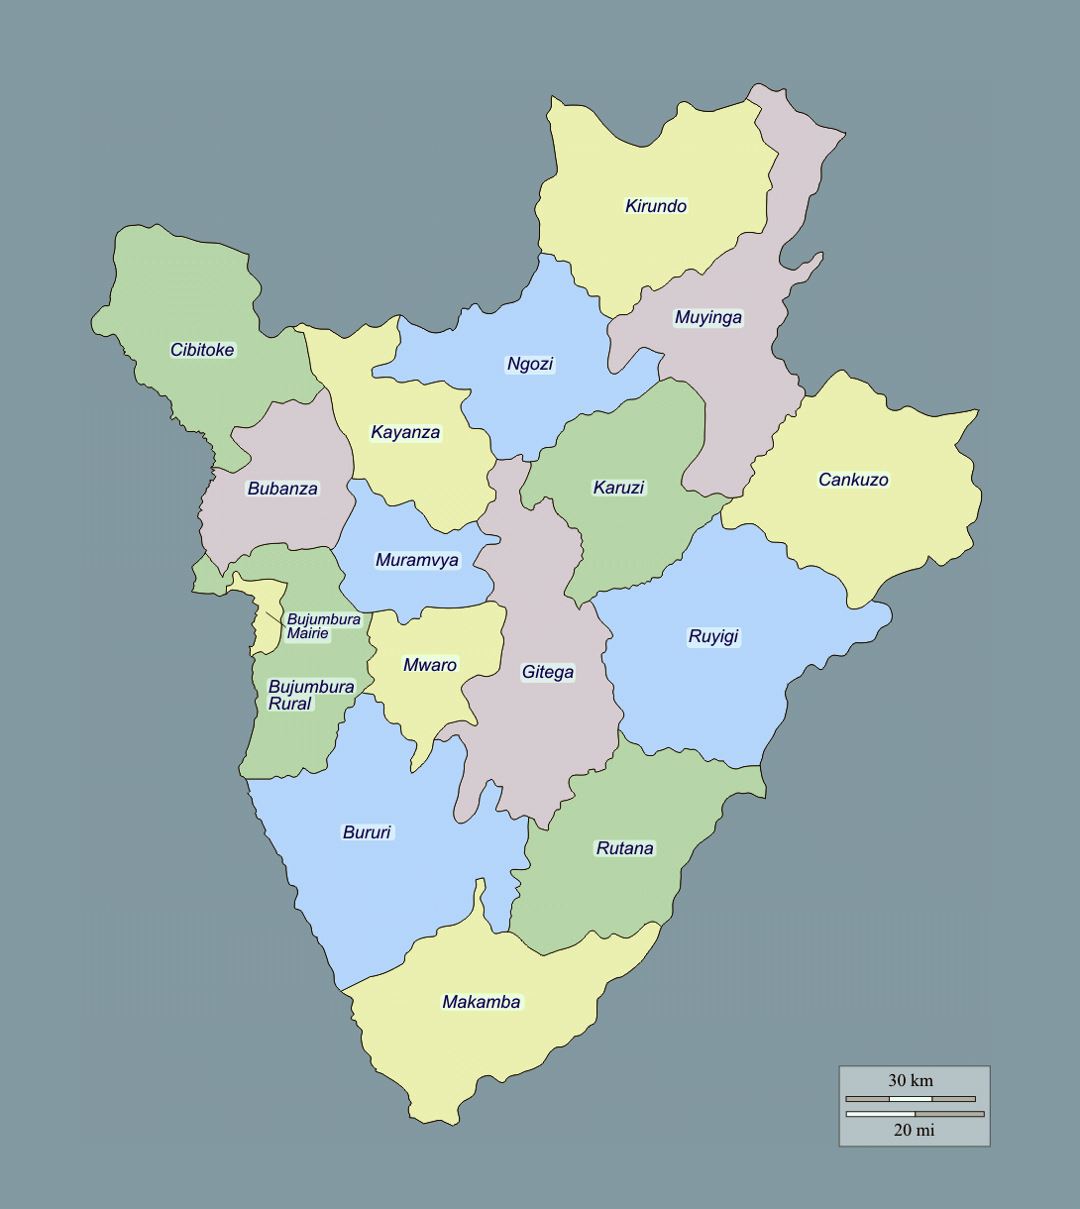 Detailed administrative map of Burundi